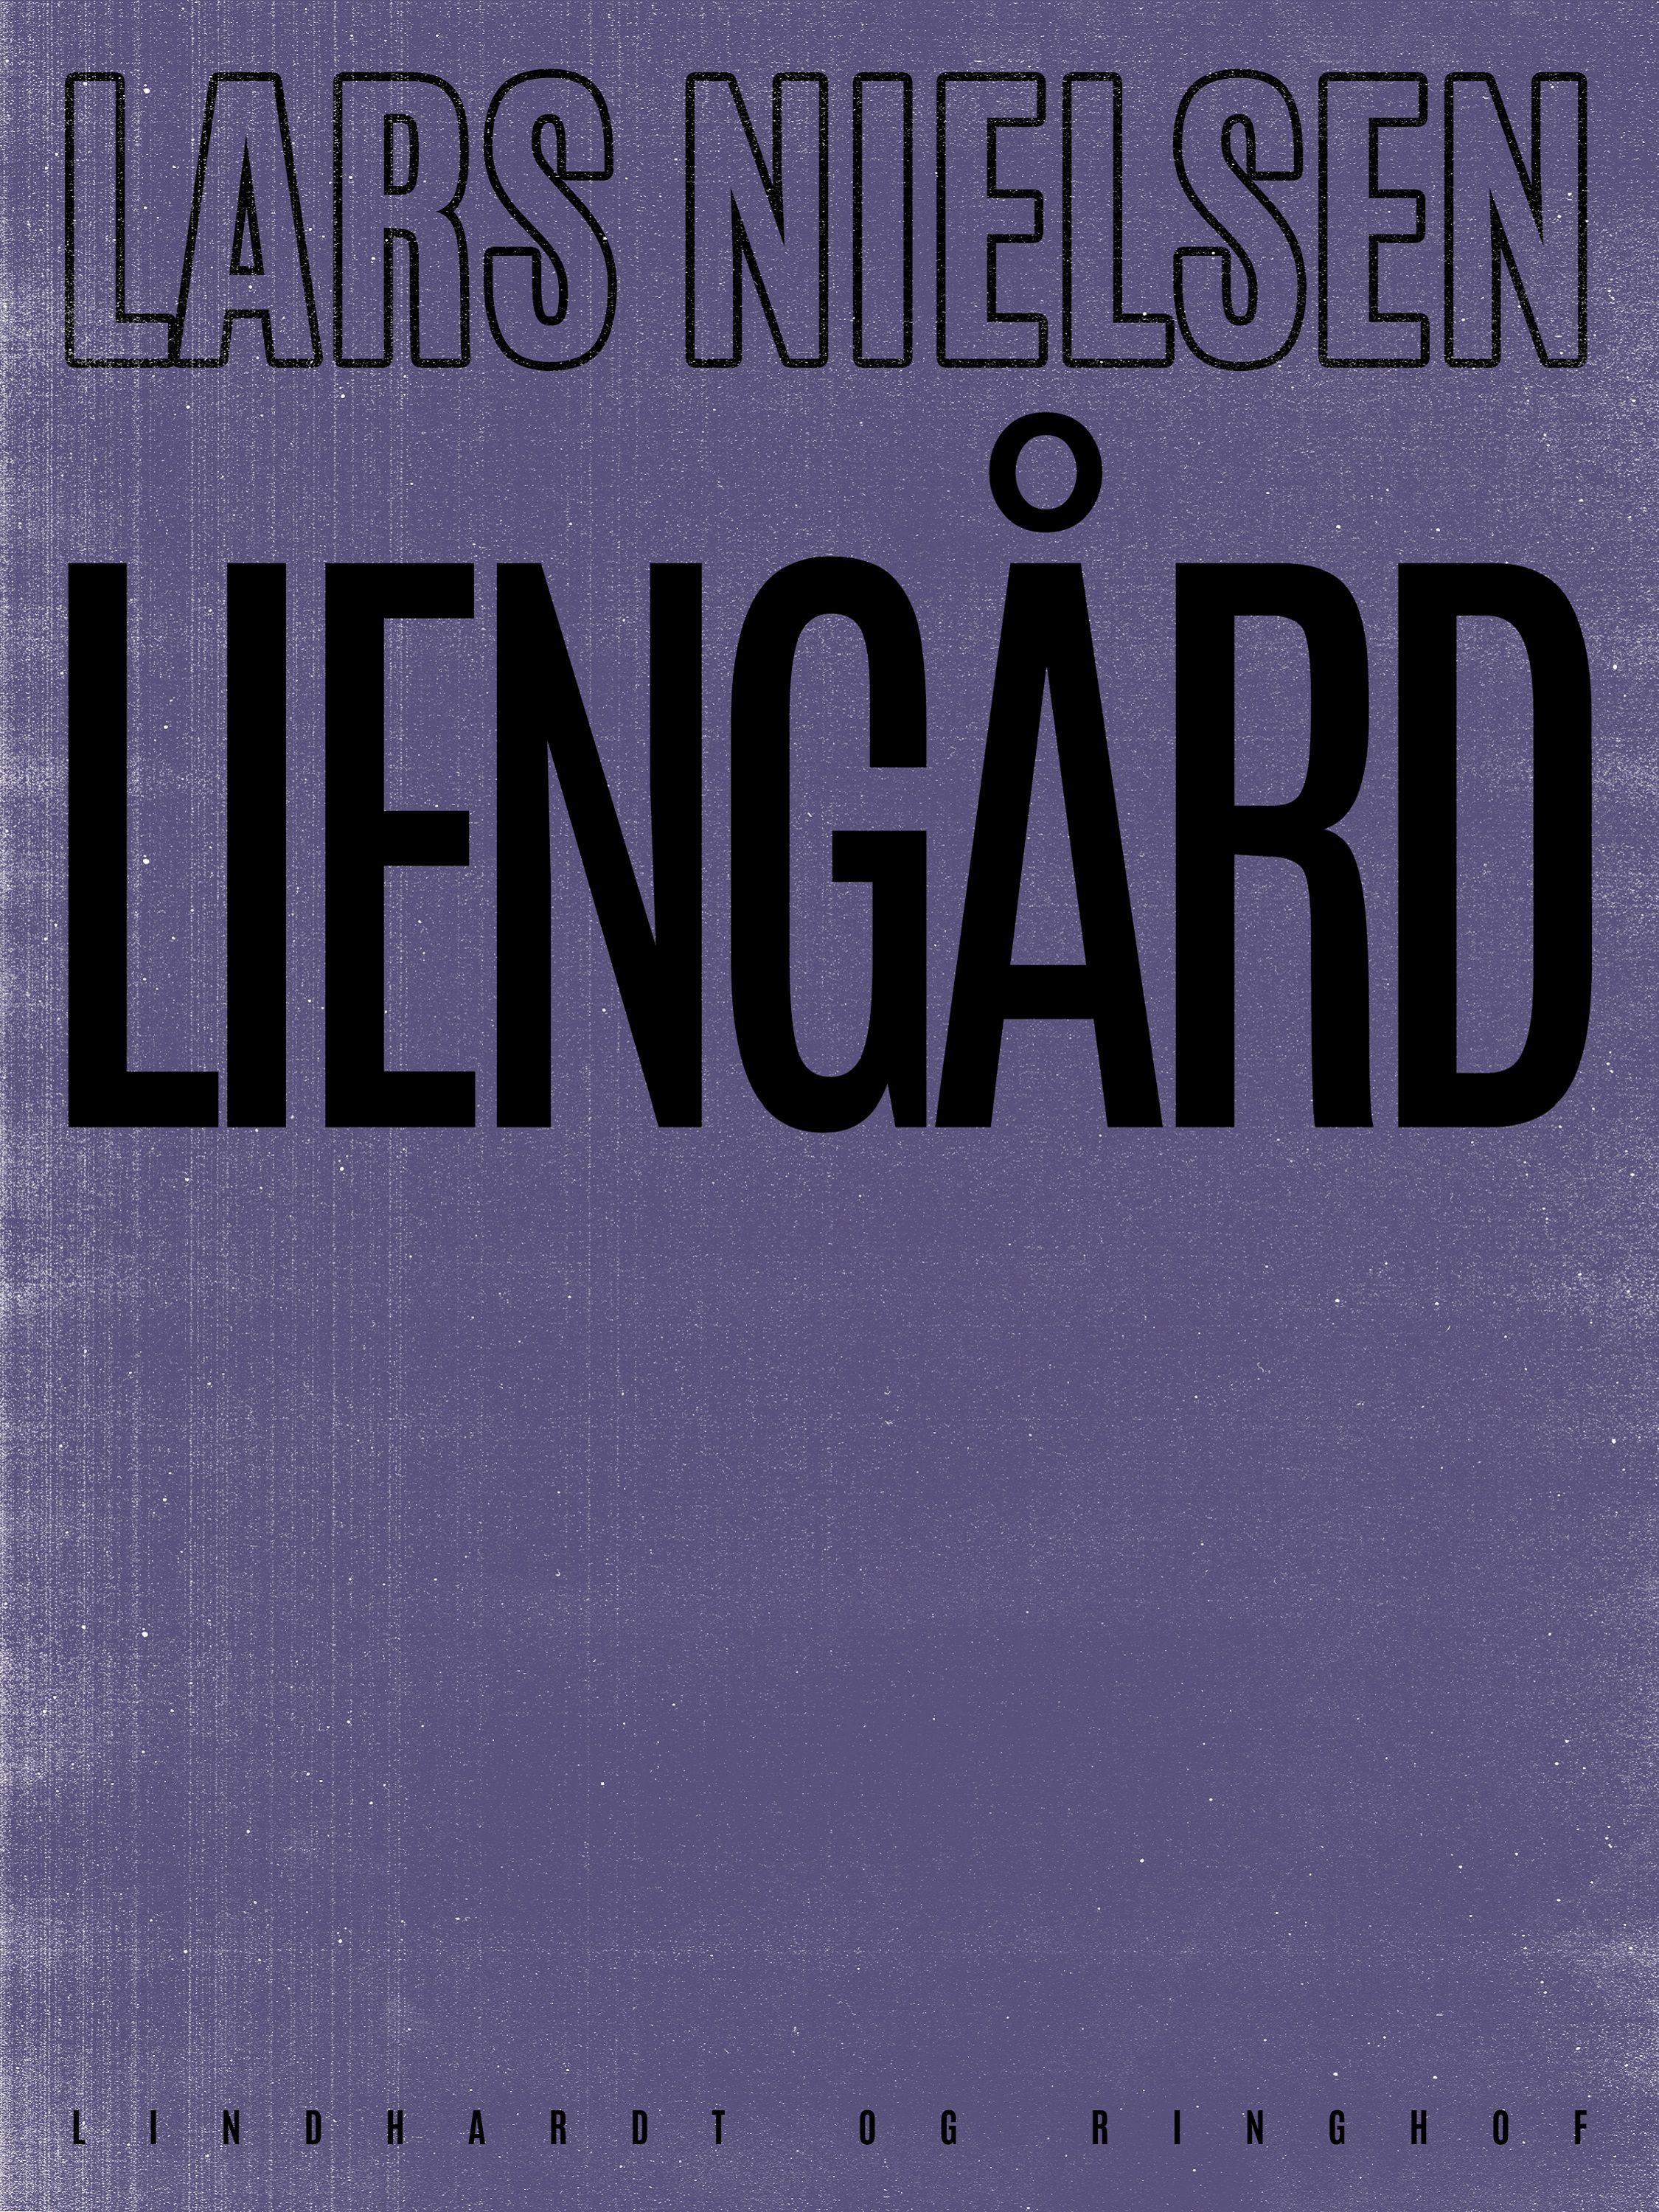 Liengård, audiobook by Lars Nielsen